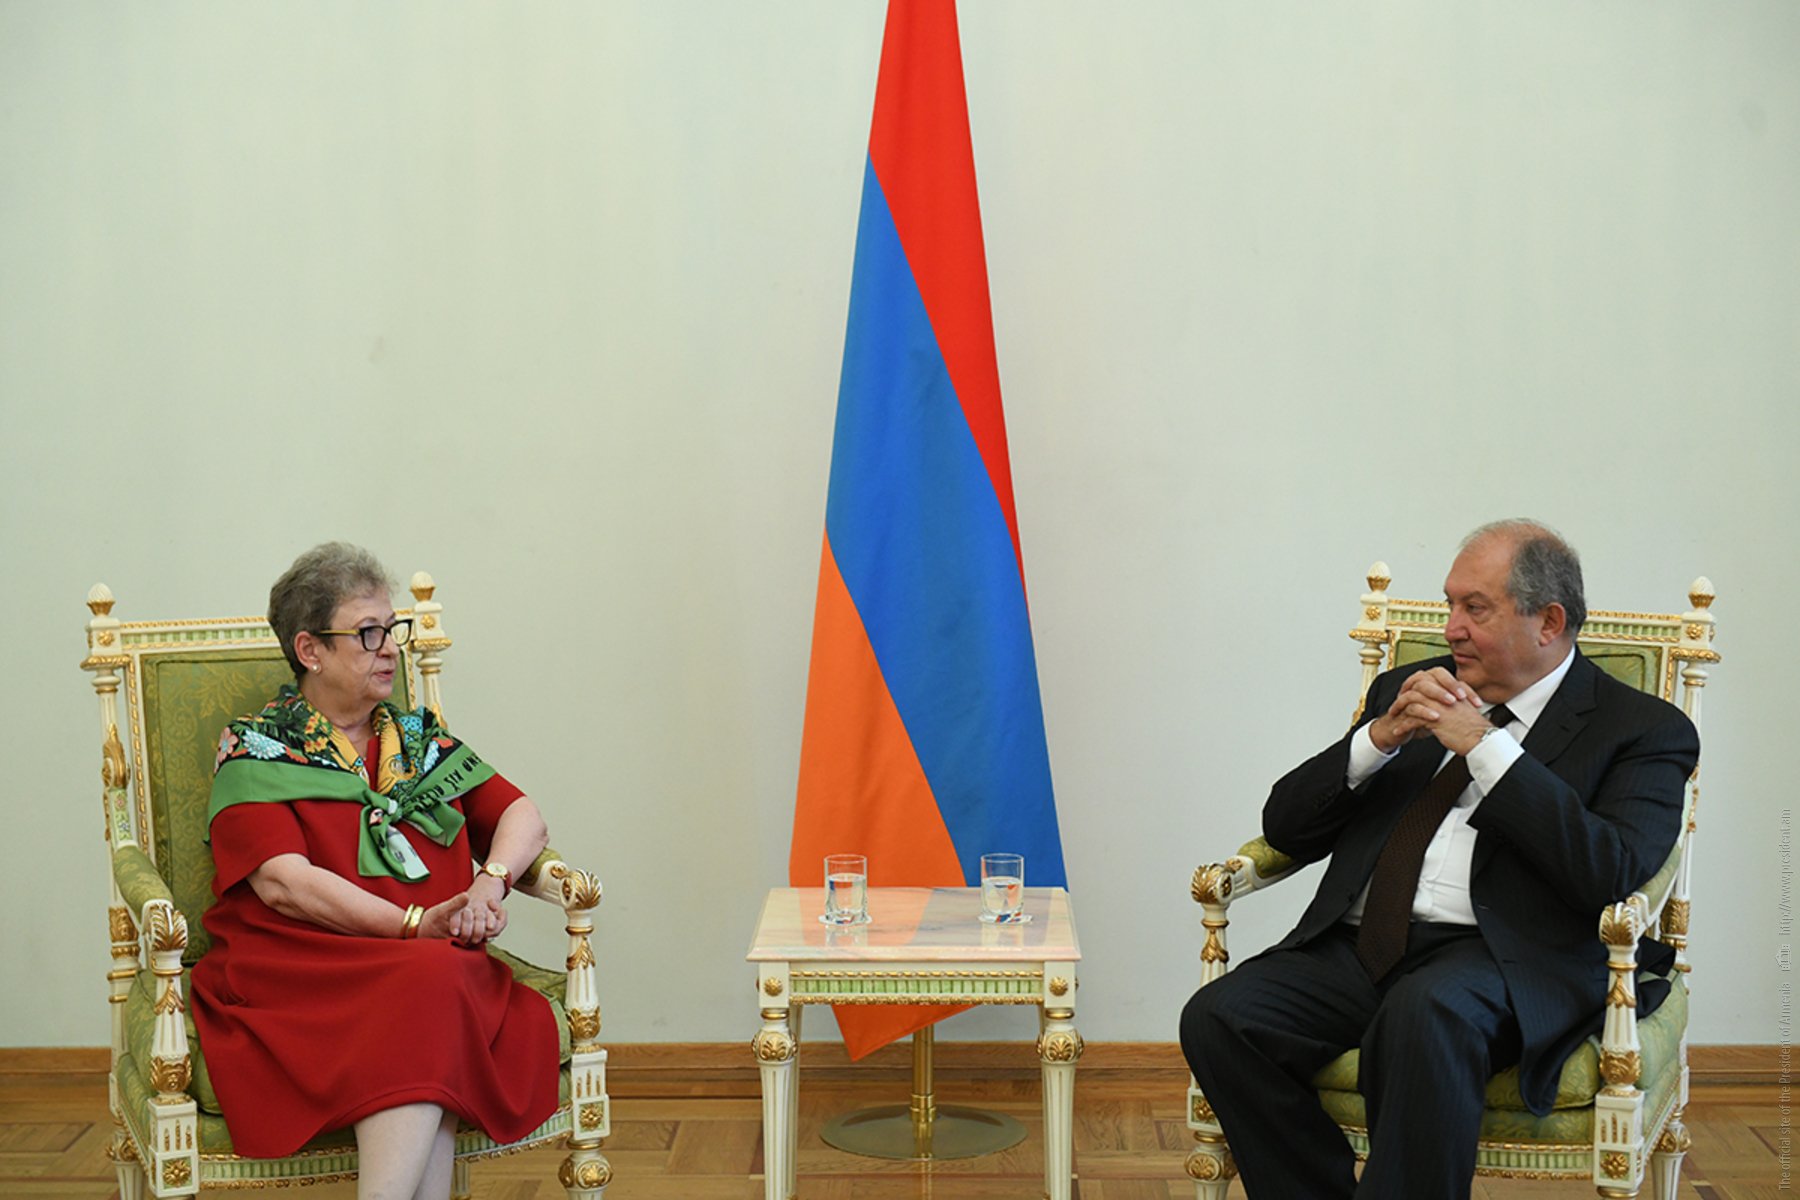 Արմեն Սարգսյանը հանդիպում է ունեցել Հայաստանում Եվրոպական միության պատվիրակության ղեկավար Անդրեա Վիկտորինի հետ